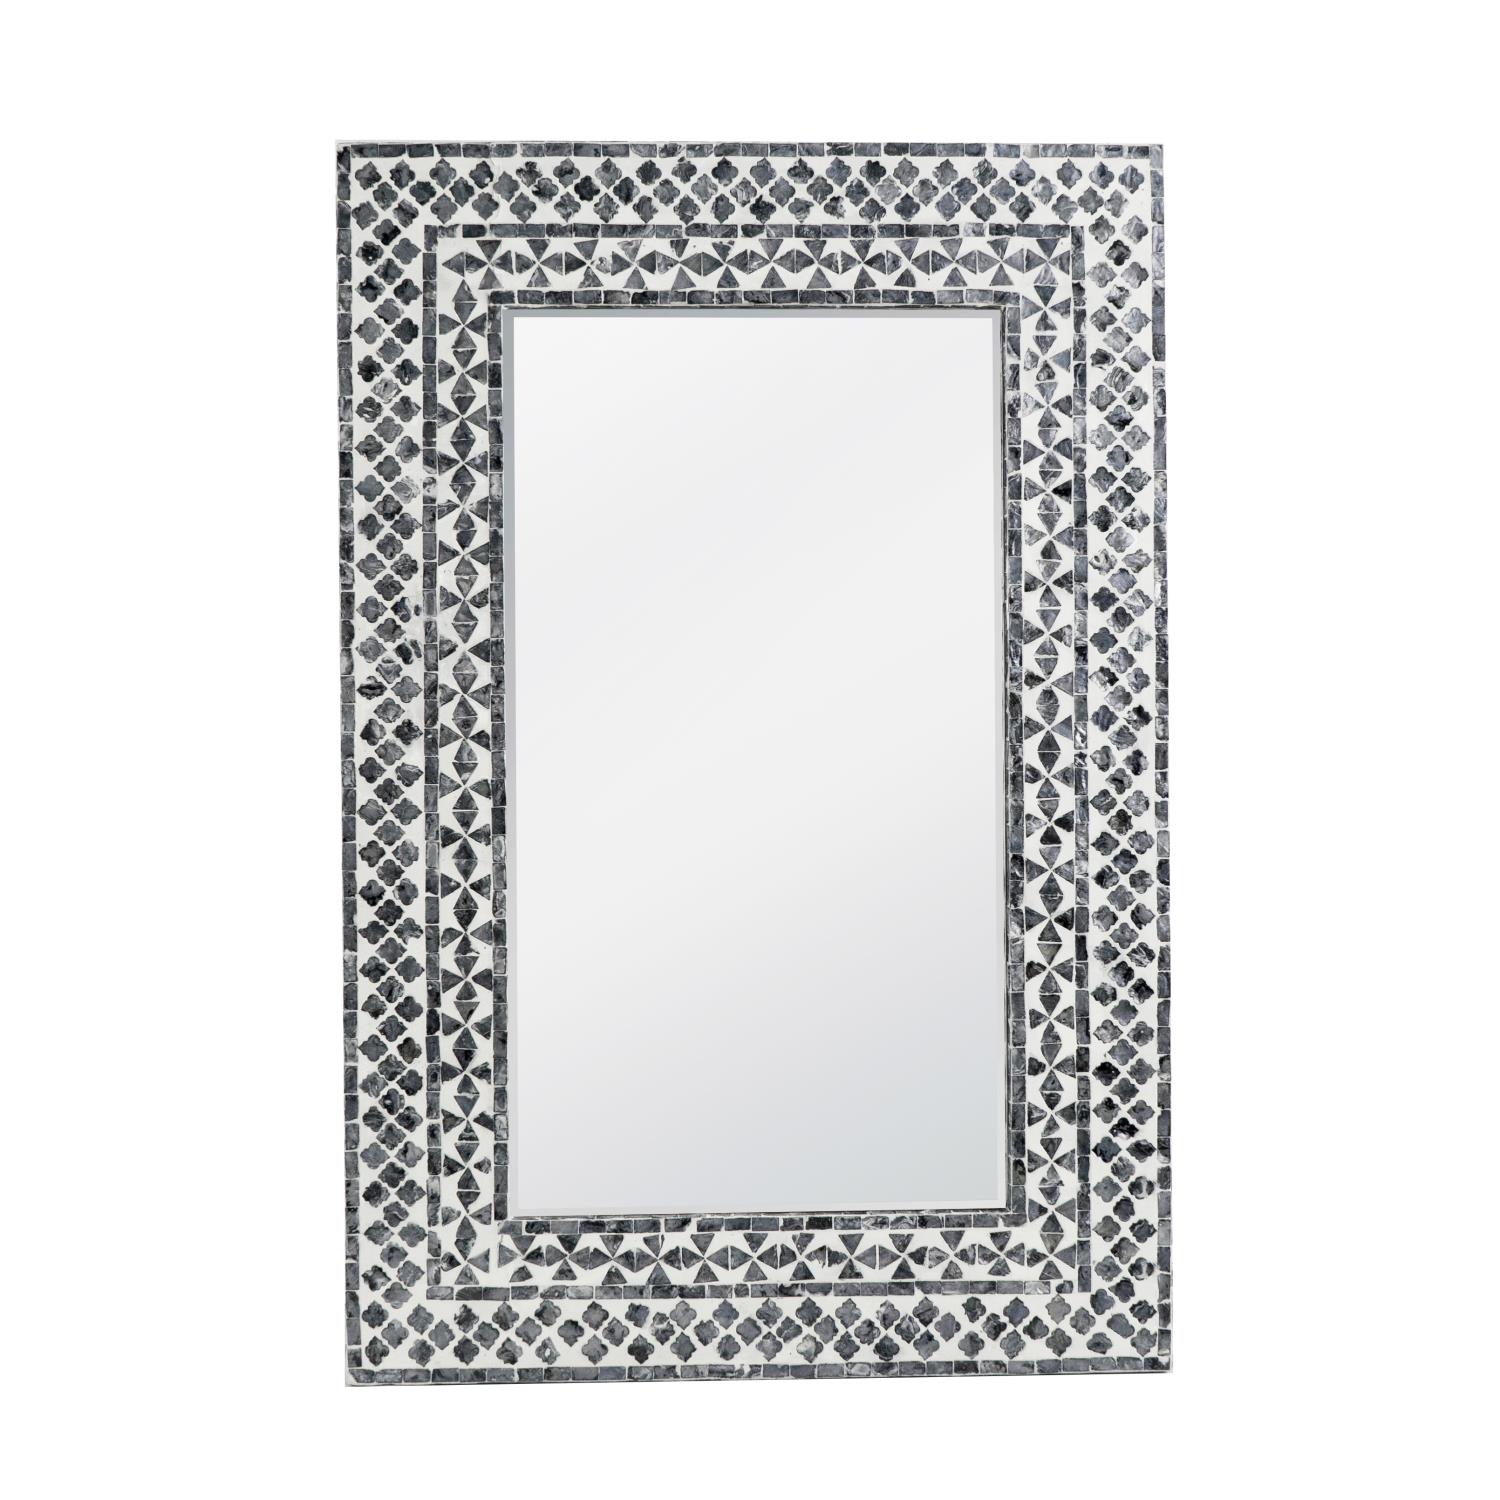 AB Home A&B Home Contemporary Rectangular Capiz Framed Mirror With Black&White 48758